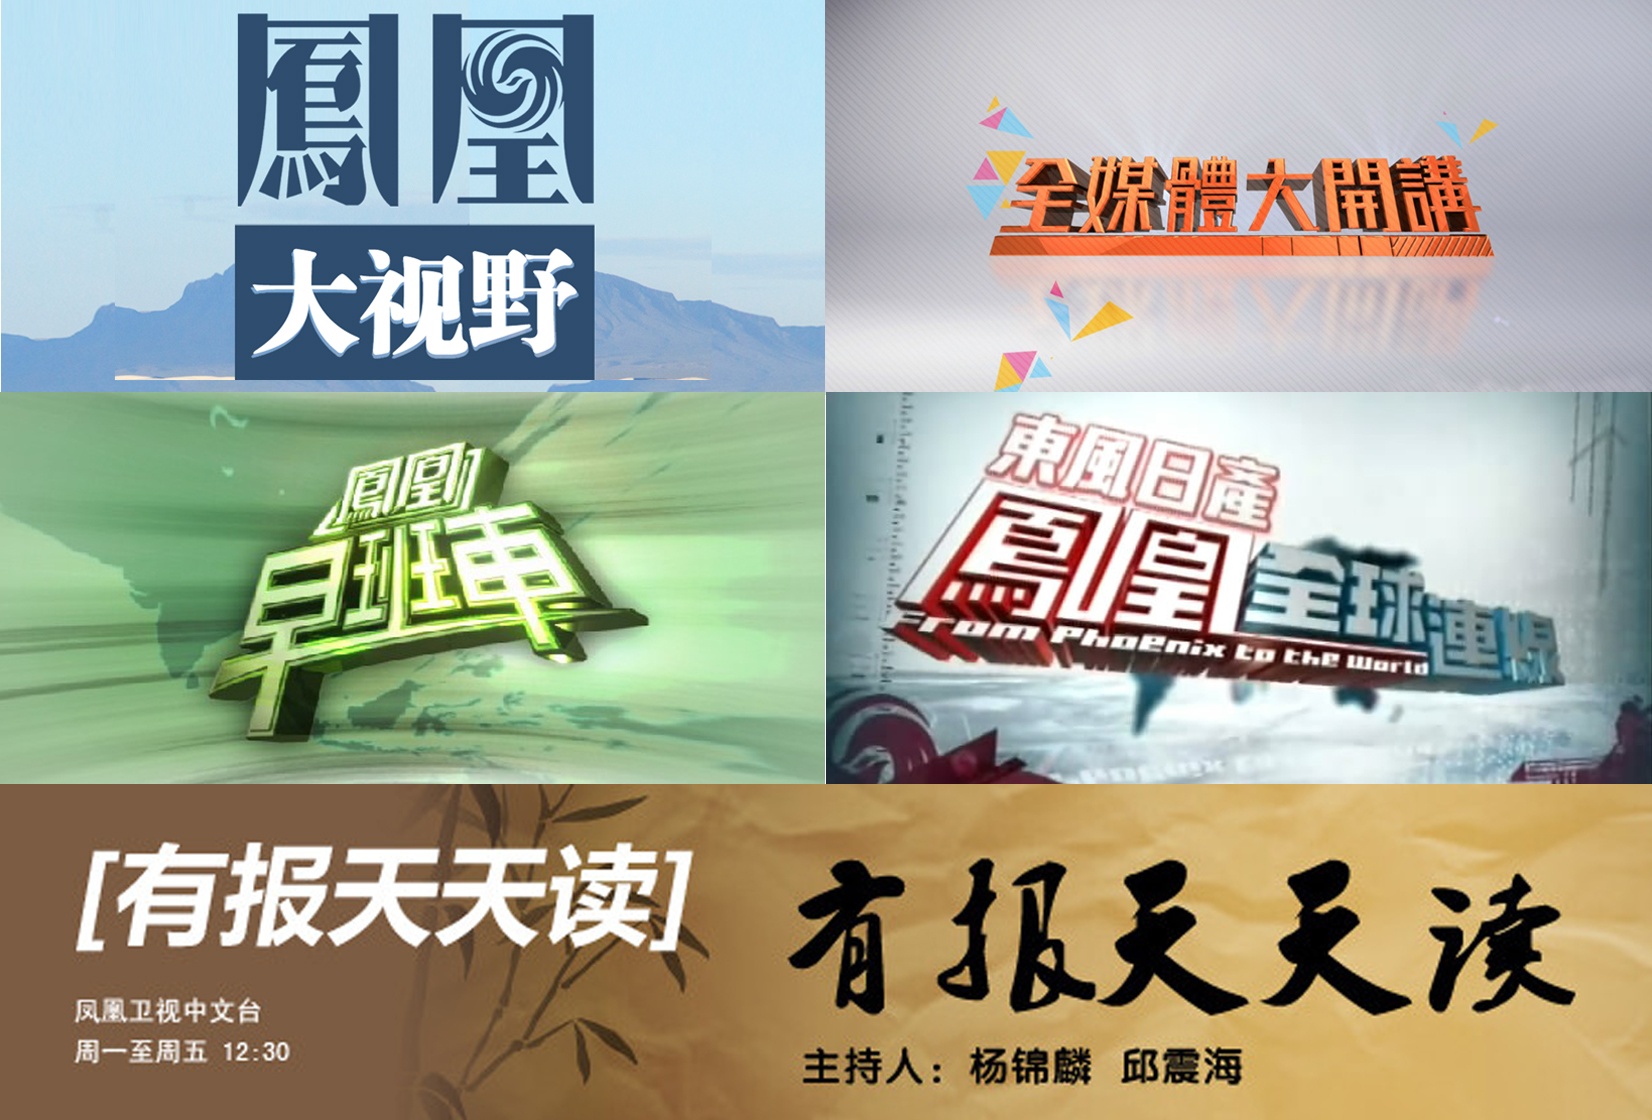 凤凰卫视的主持人来自于中国大陆,港澳和台湾地区